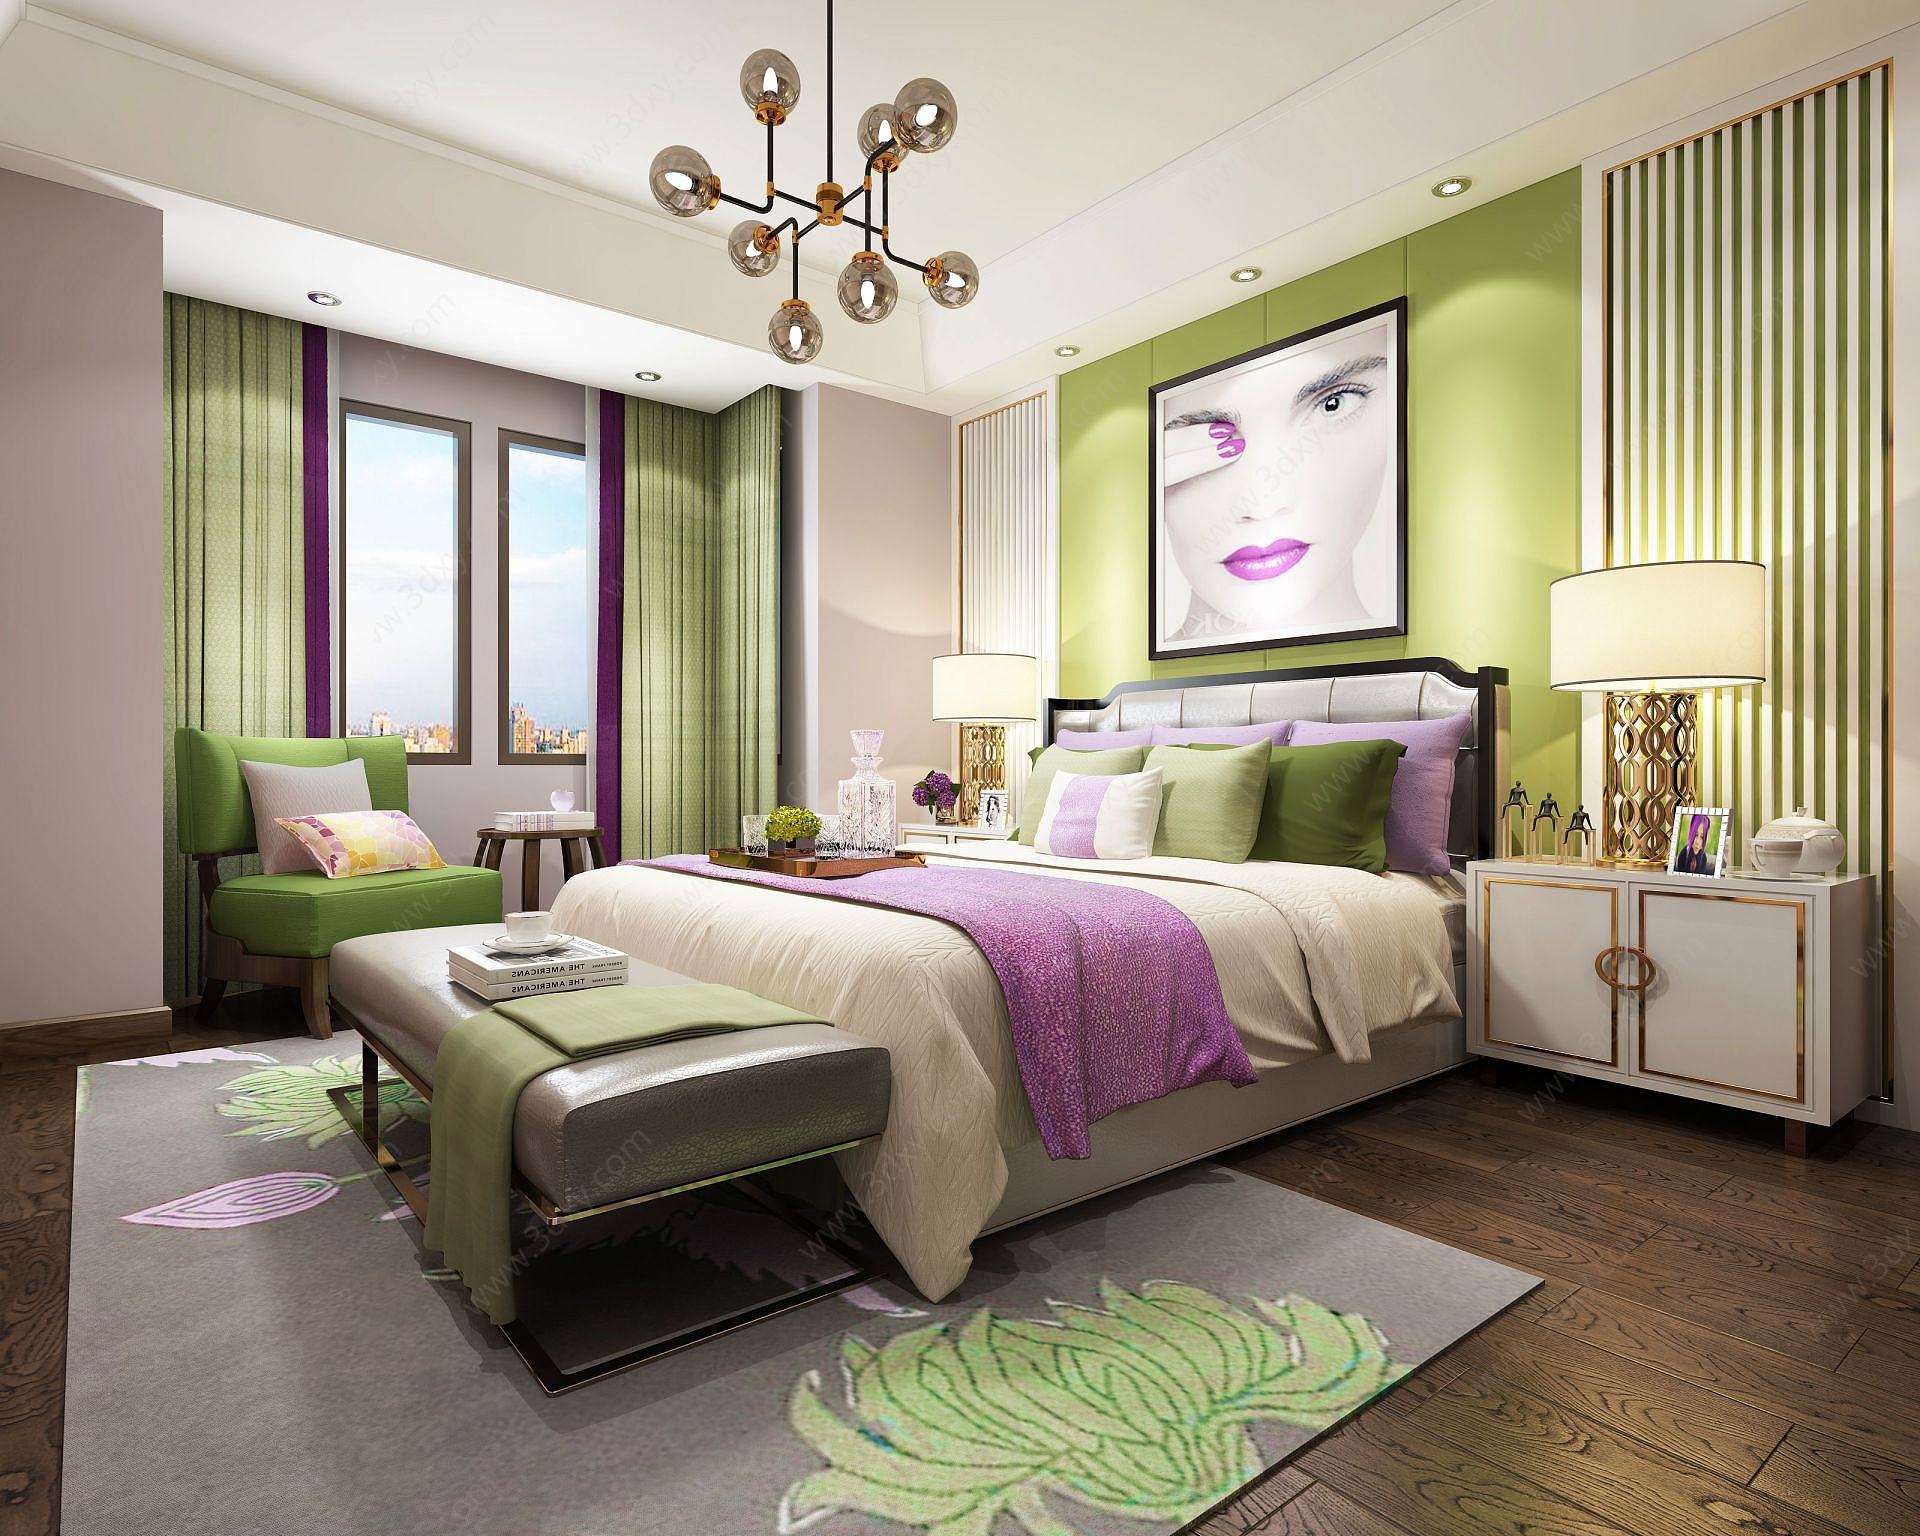 现代淡紫青绿色调主题卧室3D模型